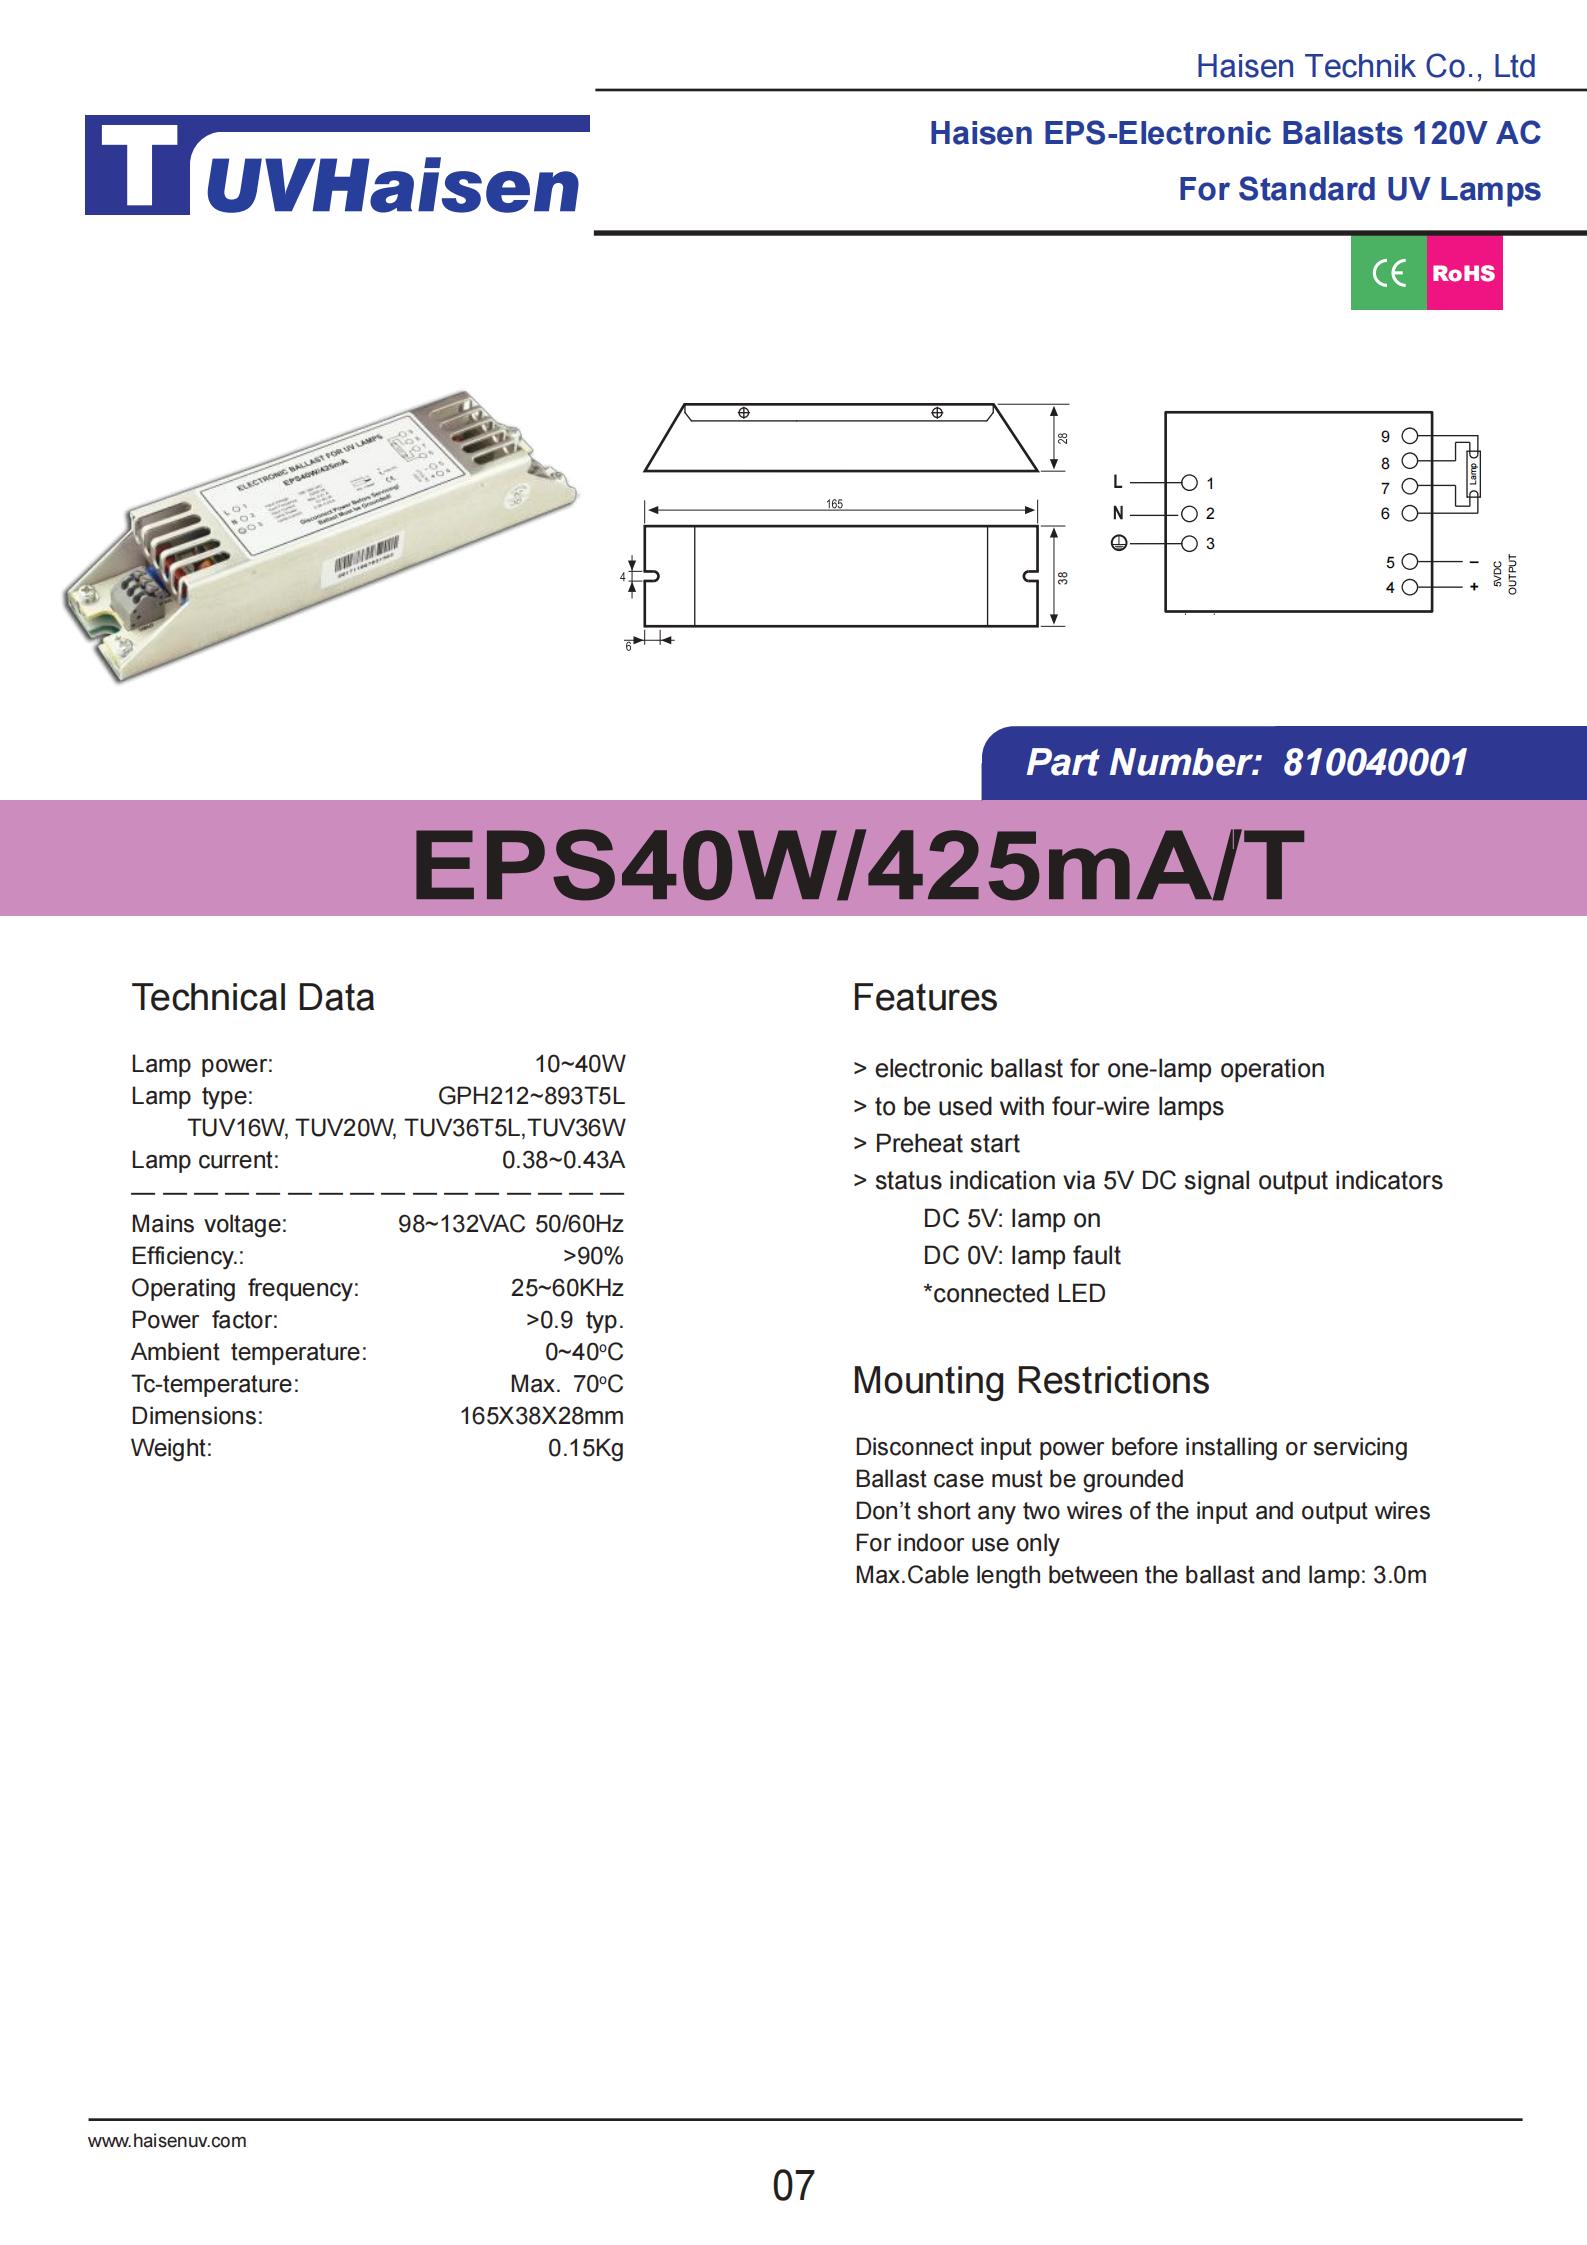  ultravoilet ballast EPS40W/425mA/T FOR UV LIGHTS